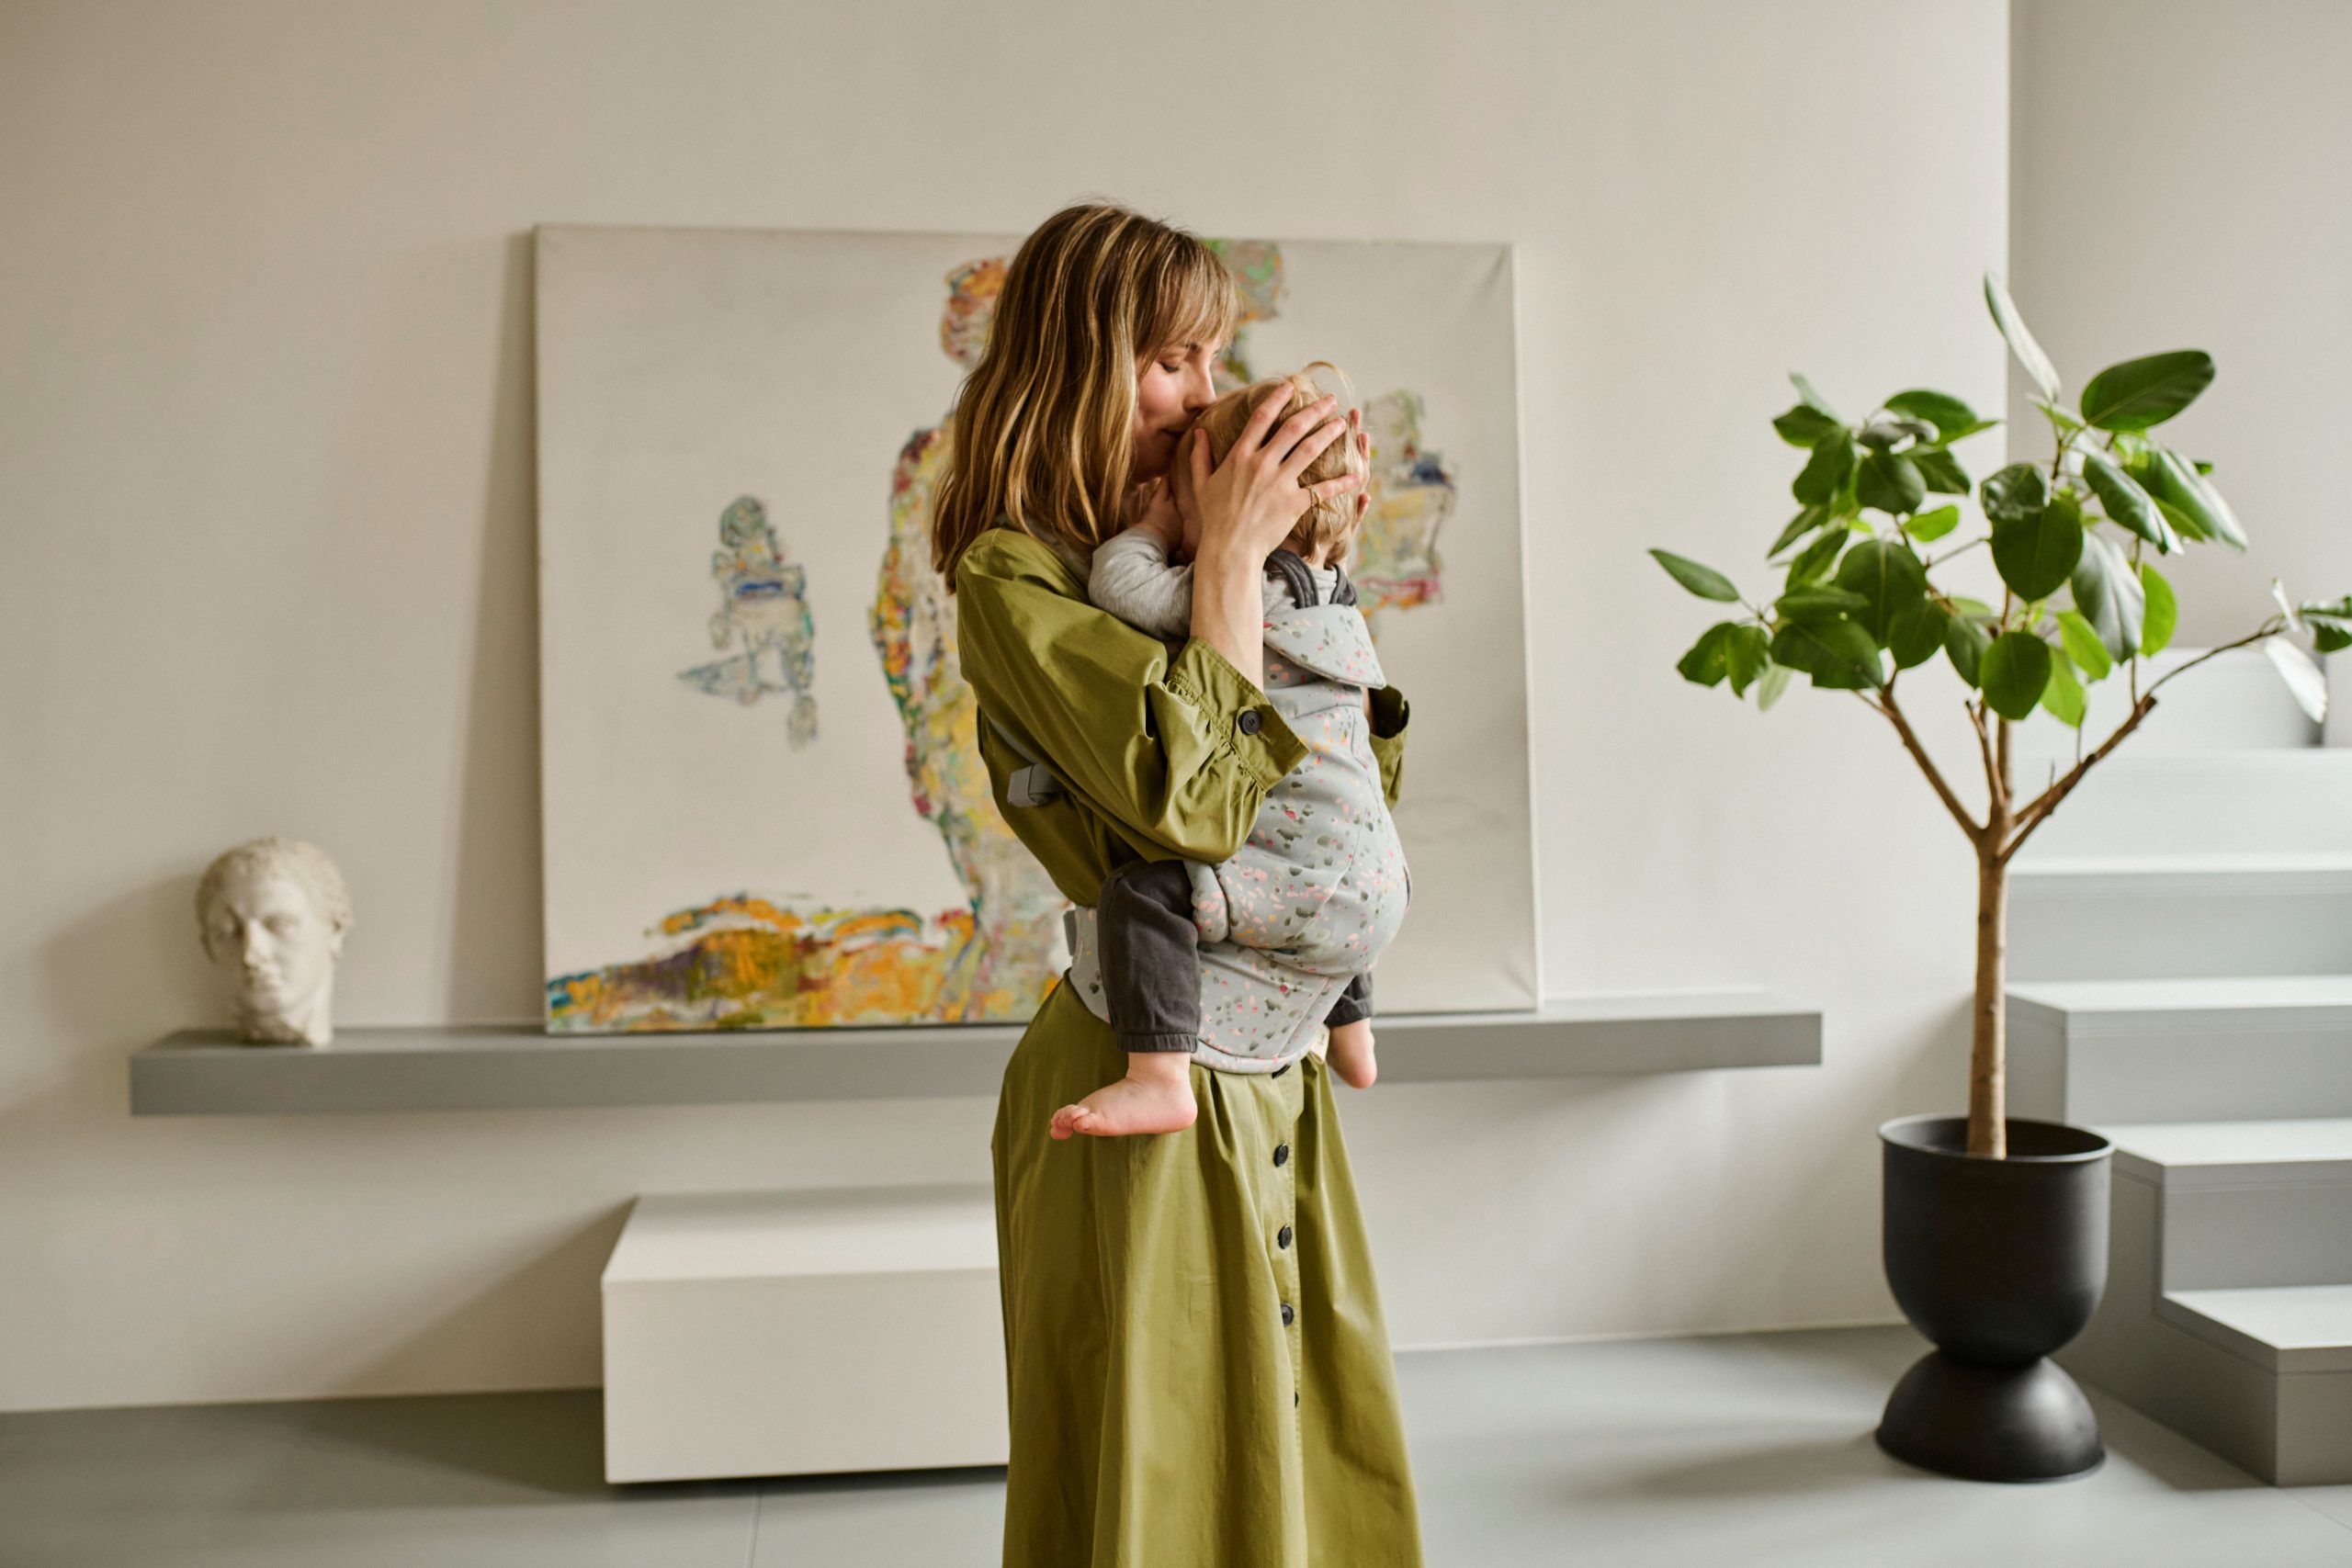 Az anyaság és a babahordozás új dimenzióját hozza el az új magyar márka, az Elysé